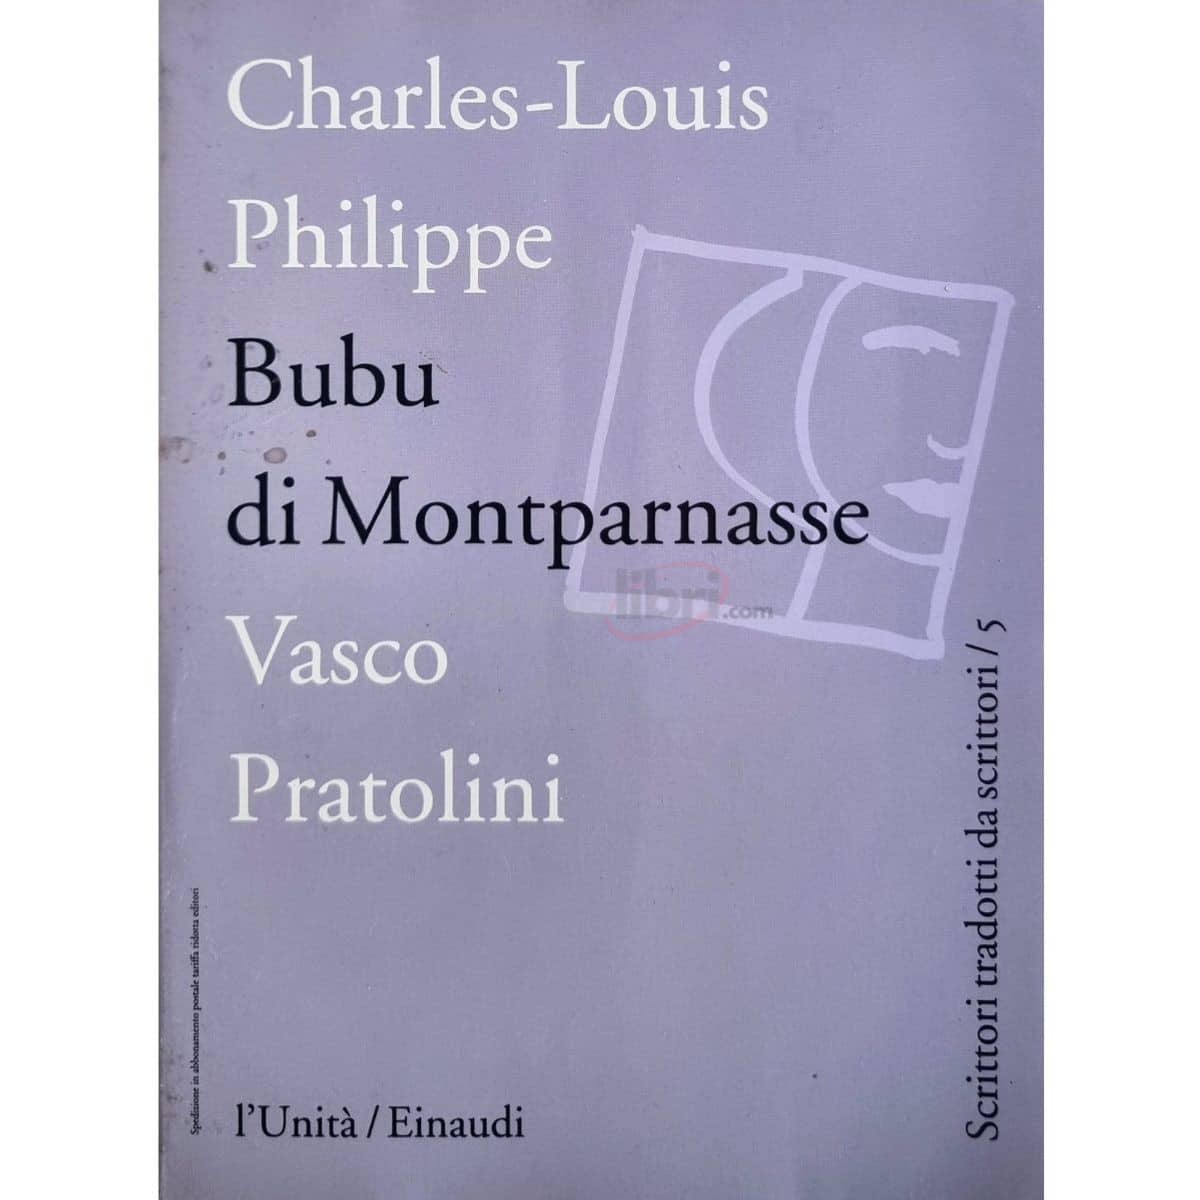 Charles-Louis Philippe Bubu di Montparnasse